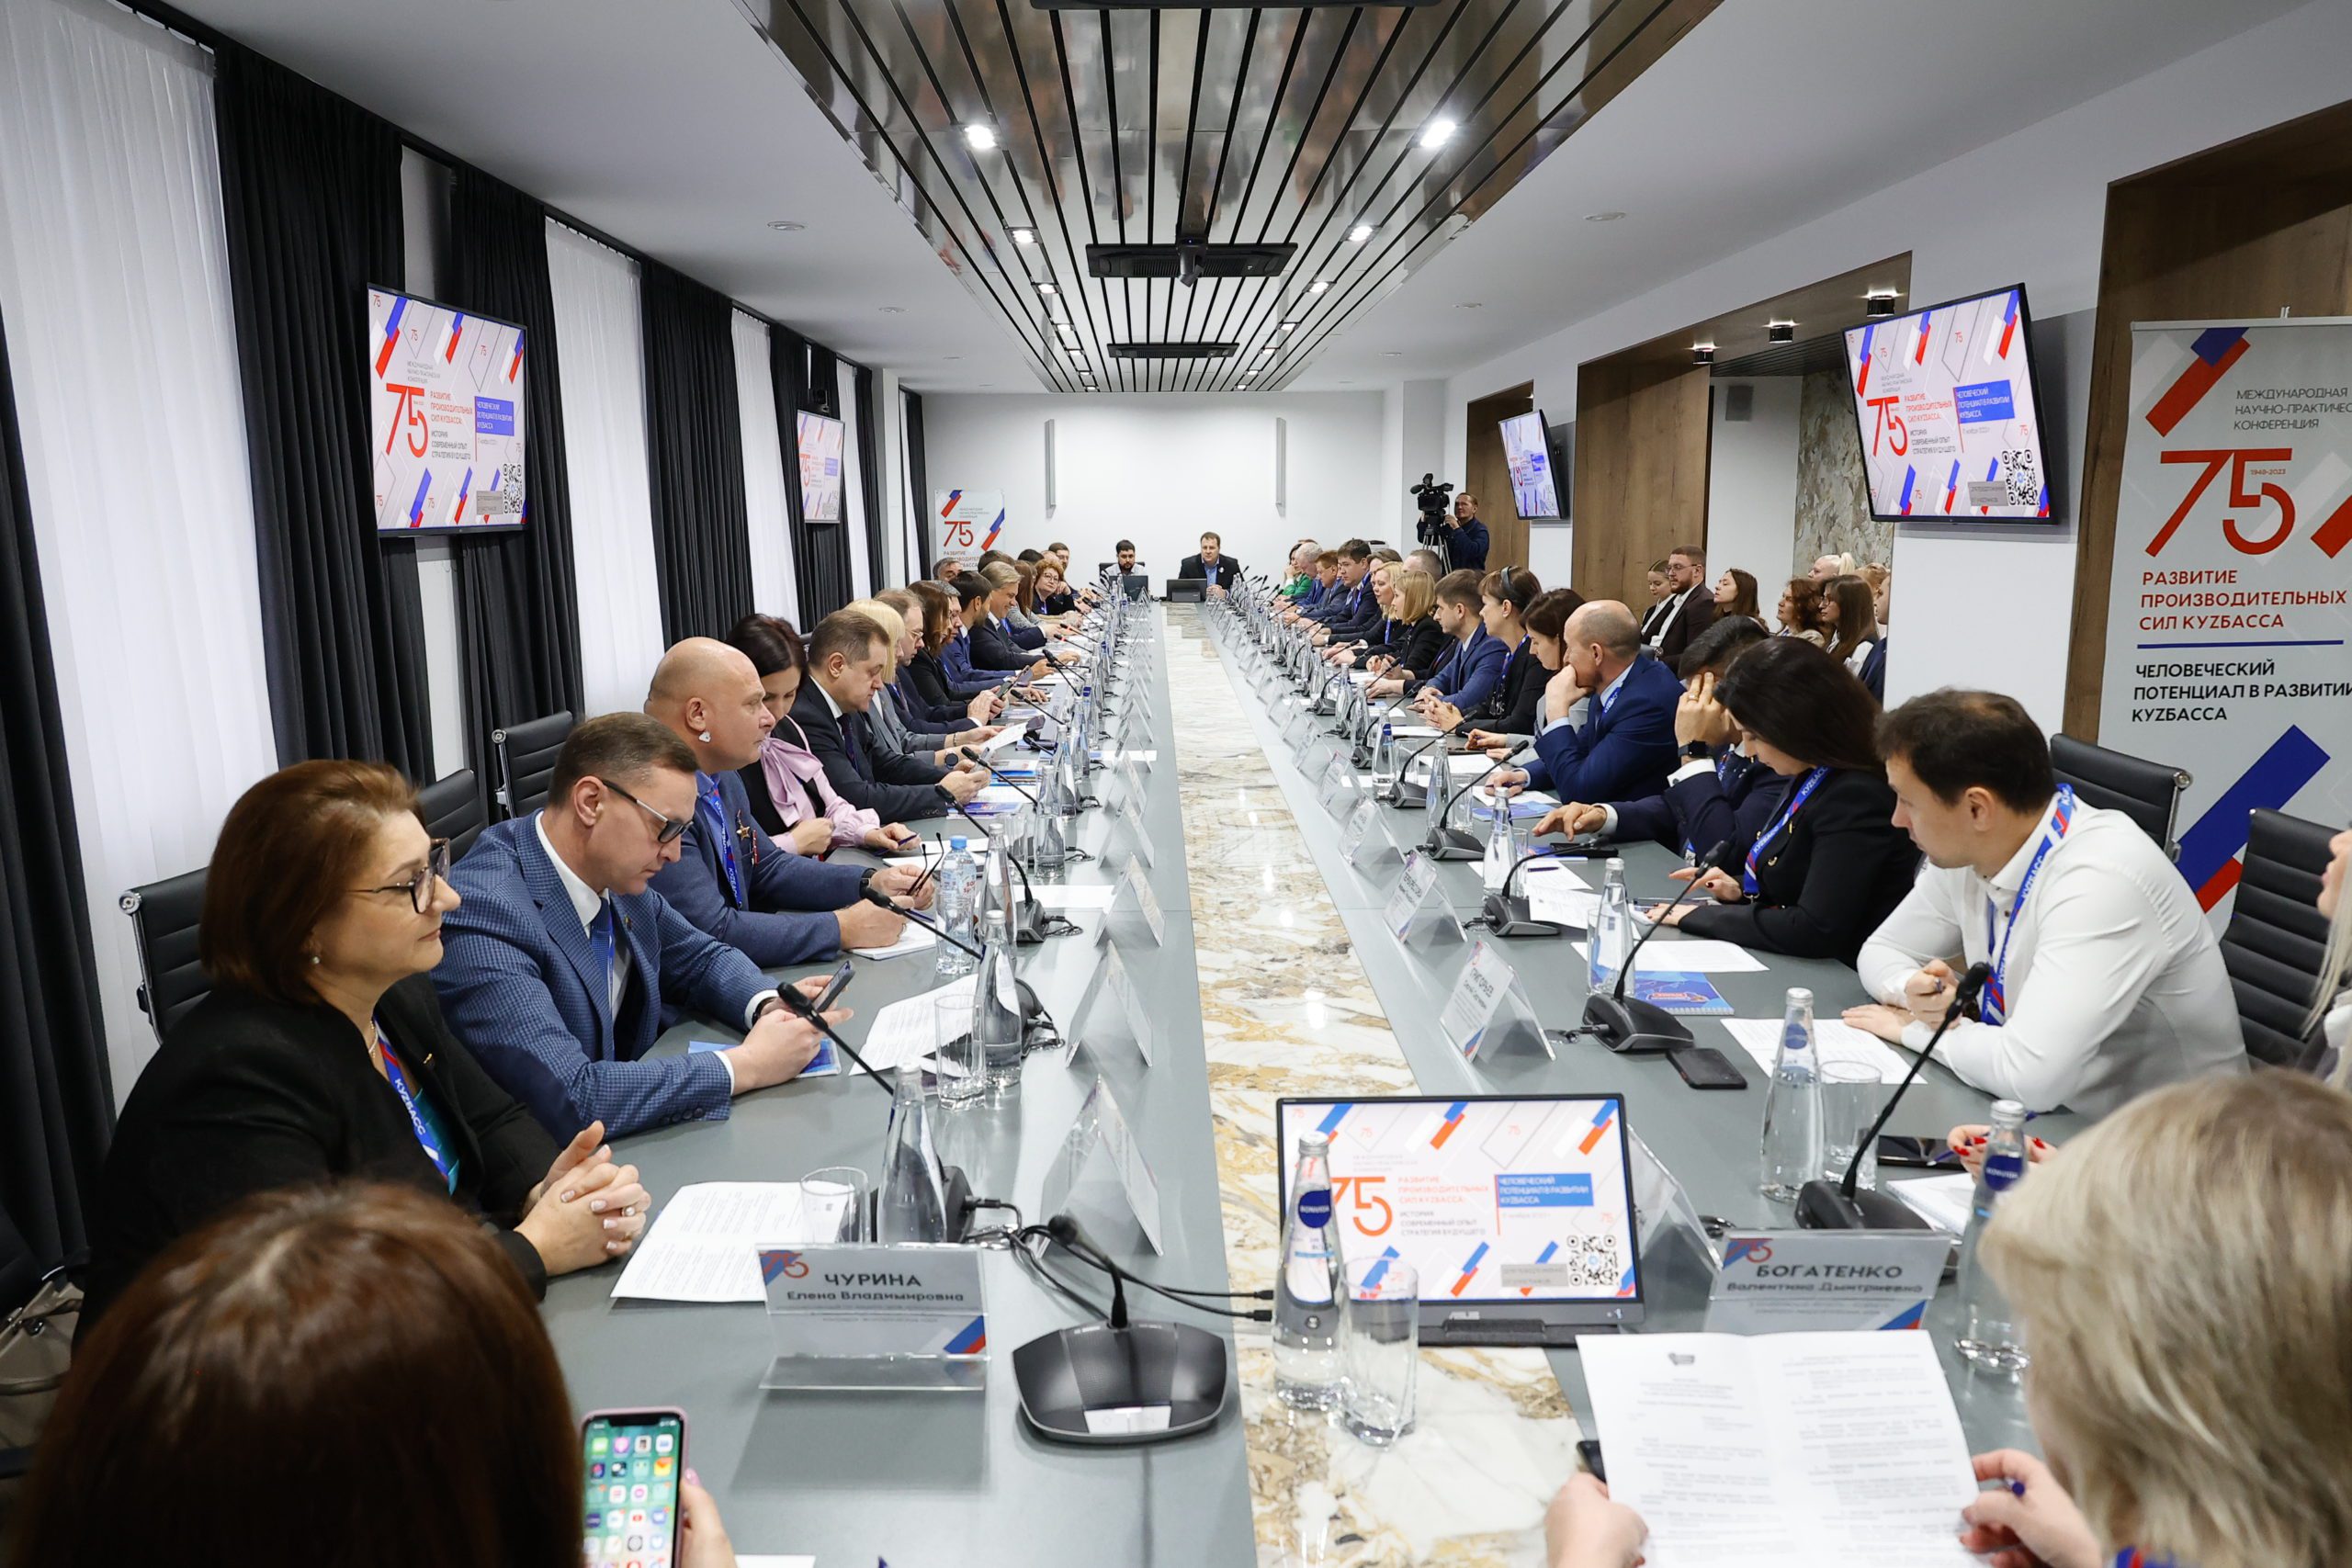 Состоялась первая сессия научной конференции “Развитие производительных сил Кузбасса”